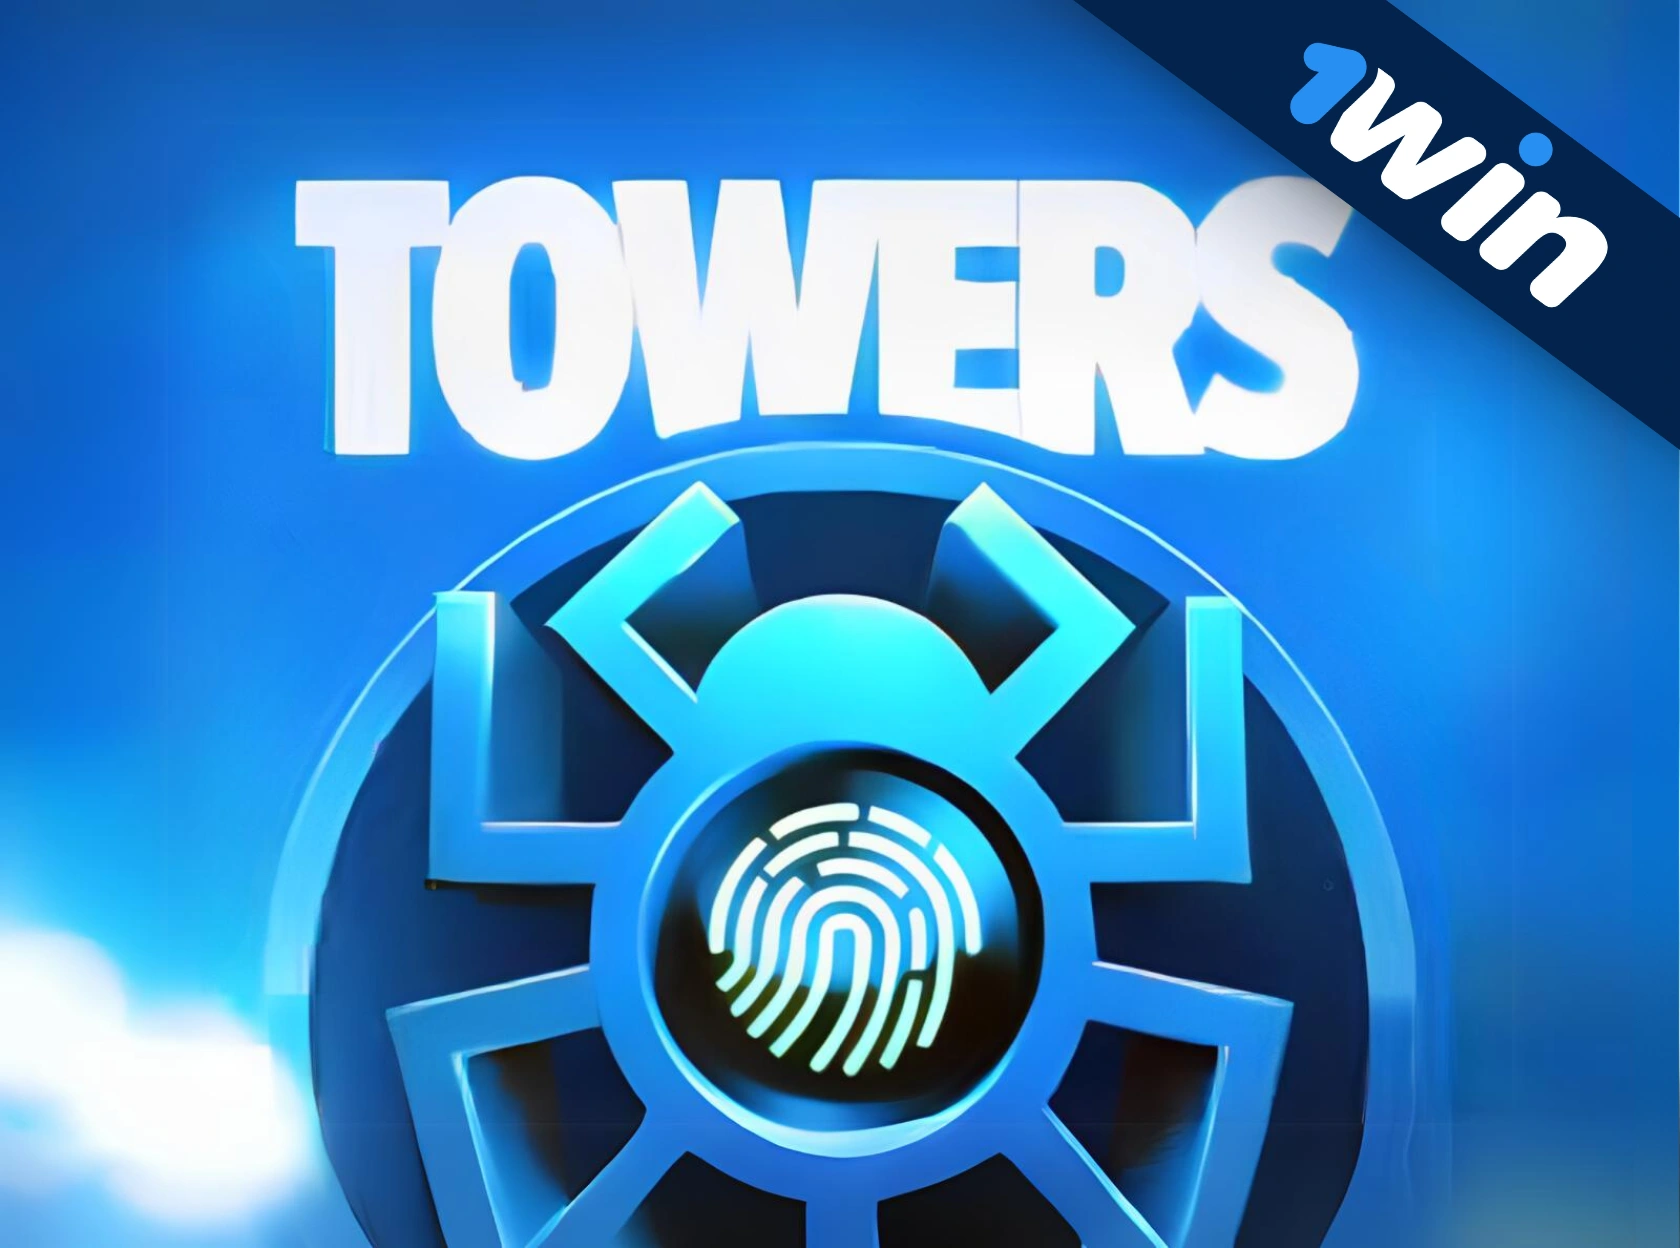 Towers 1win - pul üçün oyun onlayn oynamaq